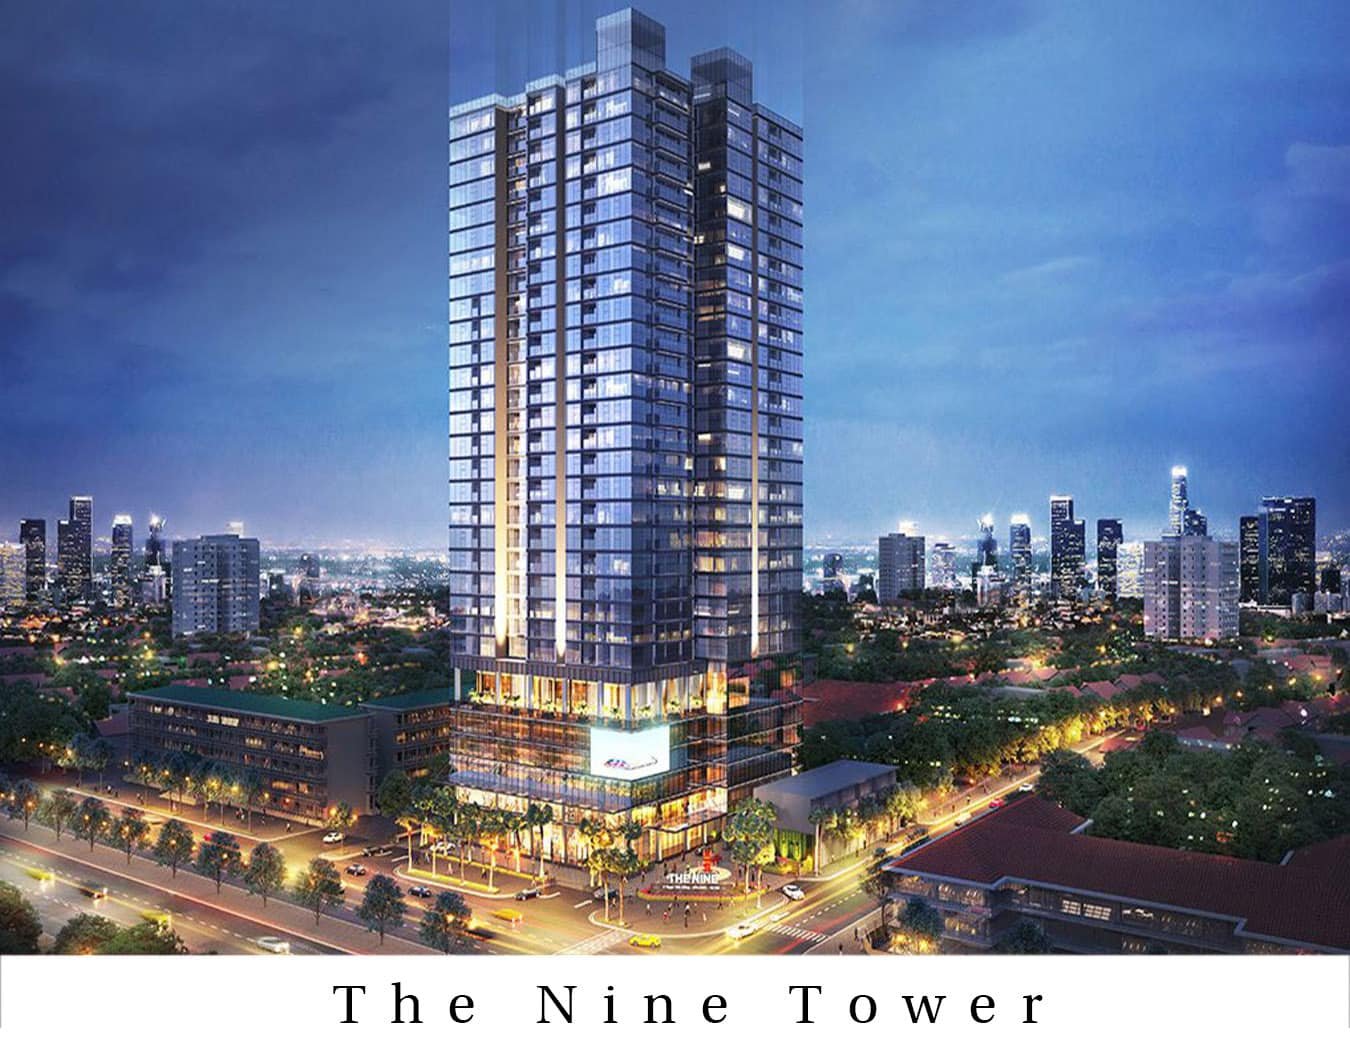 Cho thuê văn phòng Hot nhất Quận Cầu Giấy từ 300k/m2 dự án The Nine Tower 1